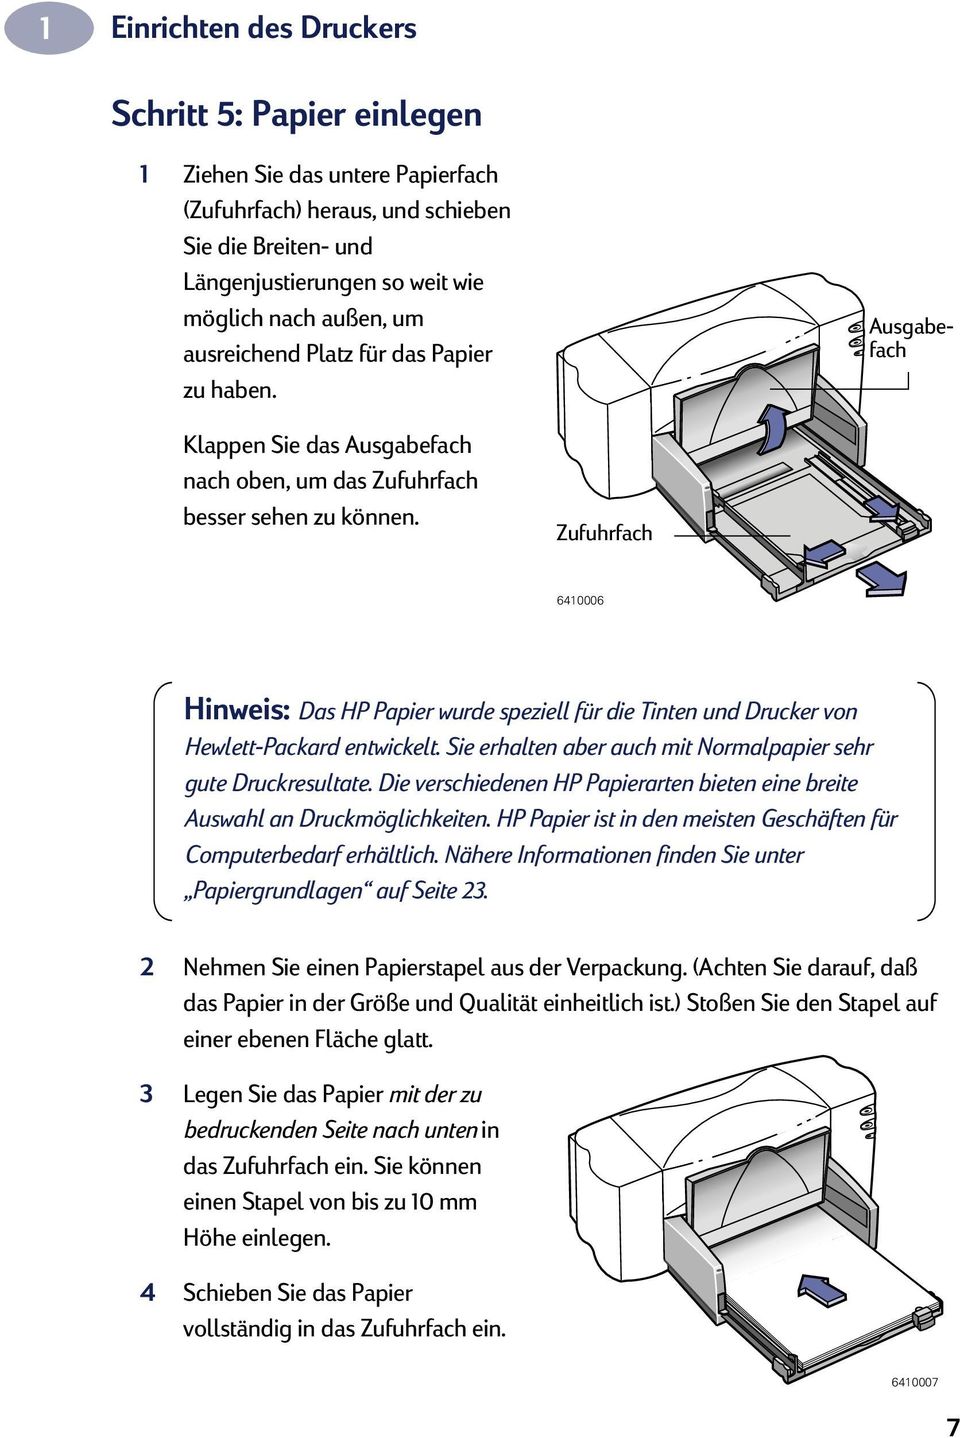 Zufuhrfach 6410006 Hinweis: Das HP Papier wurde speziell für die Tinten und Drucker von Hewlett-Packard entwickelt. Sie erhalten aber auch mit Normalpapier sehr gute Druckresultate.